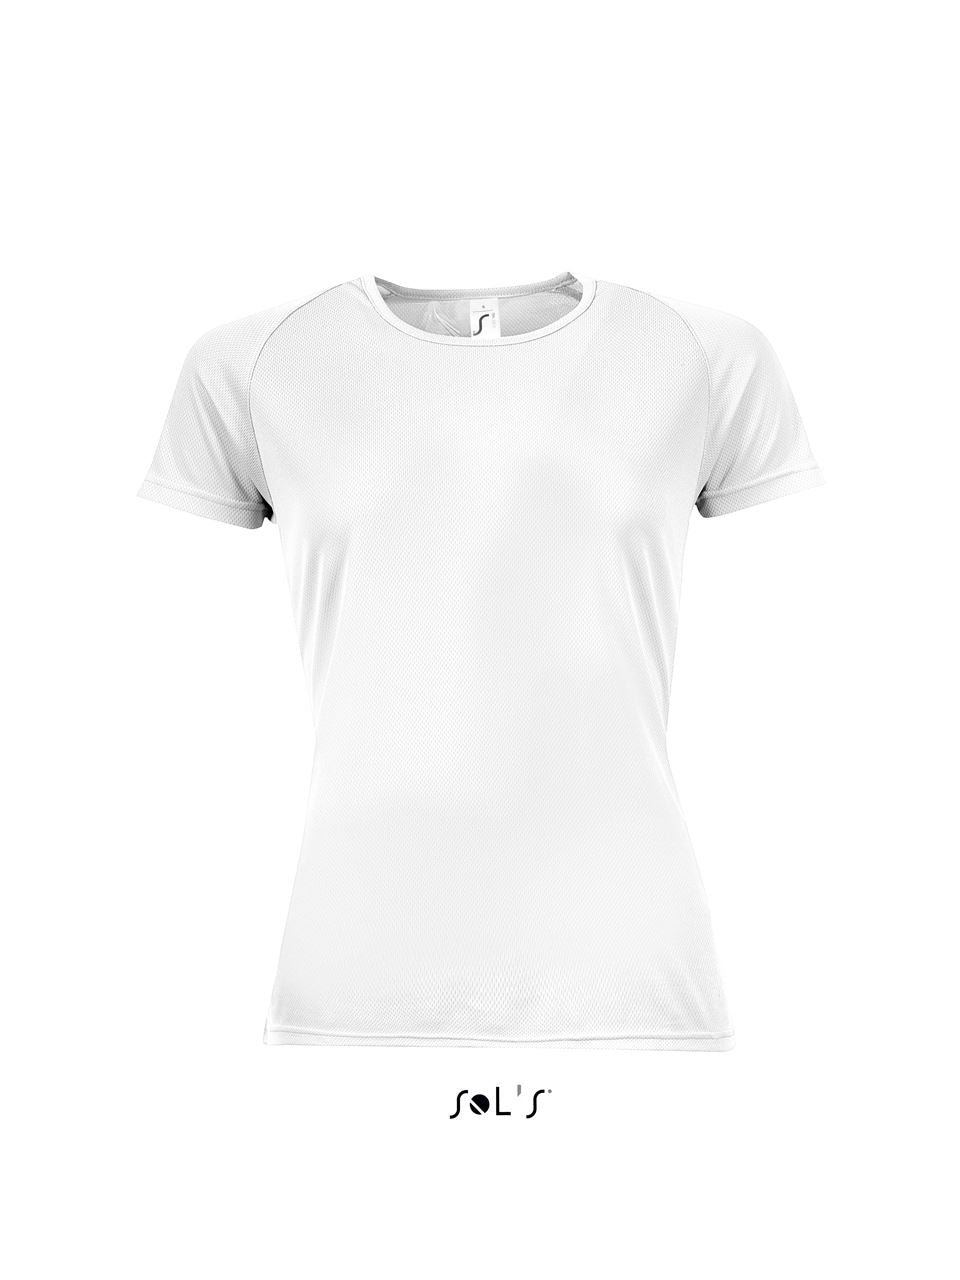 SOL'S Damen Sport T-Shirt Funktionsshirt Fitness Baumwolle Shirts